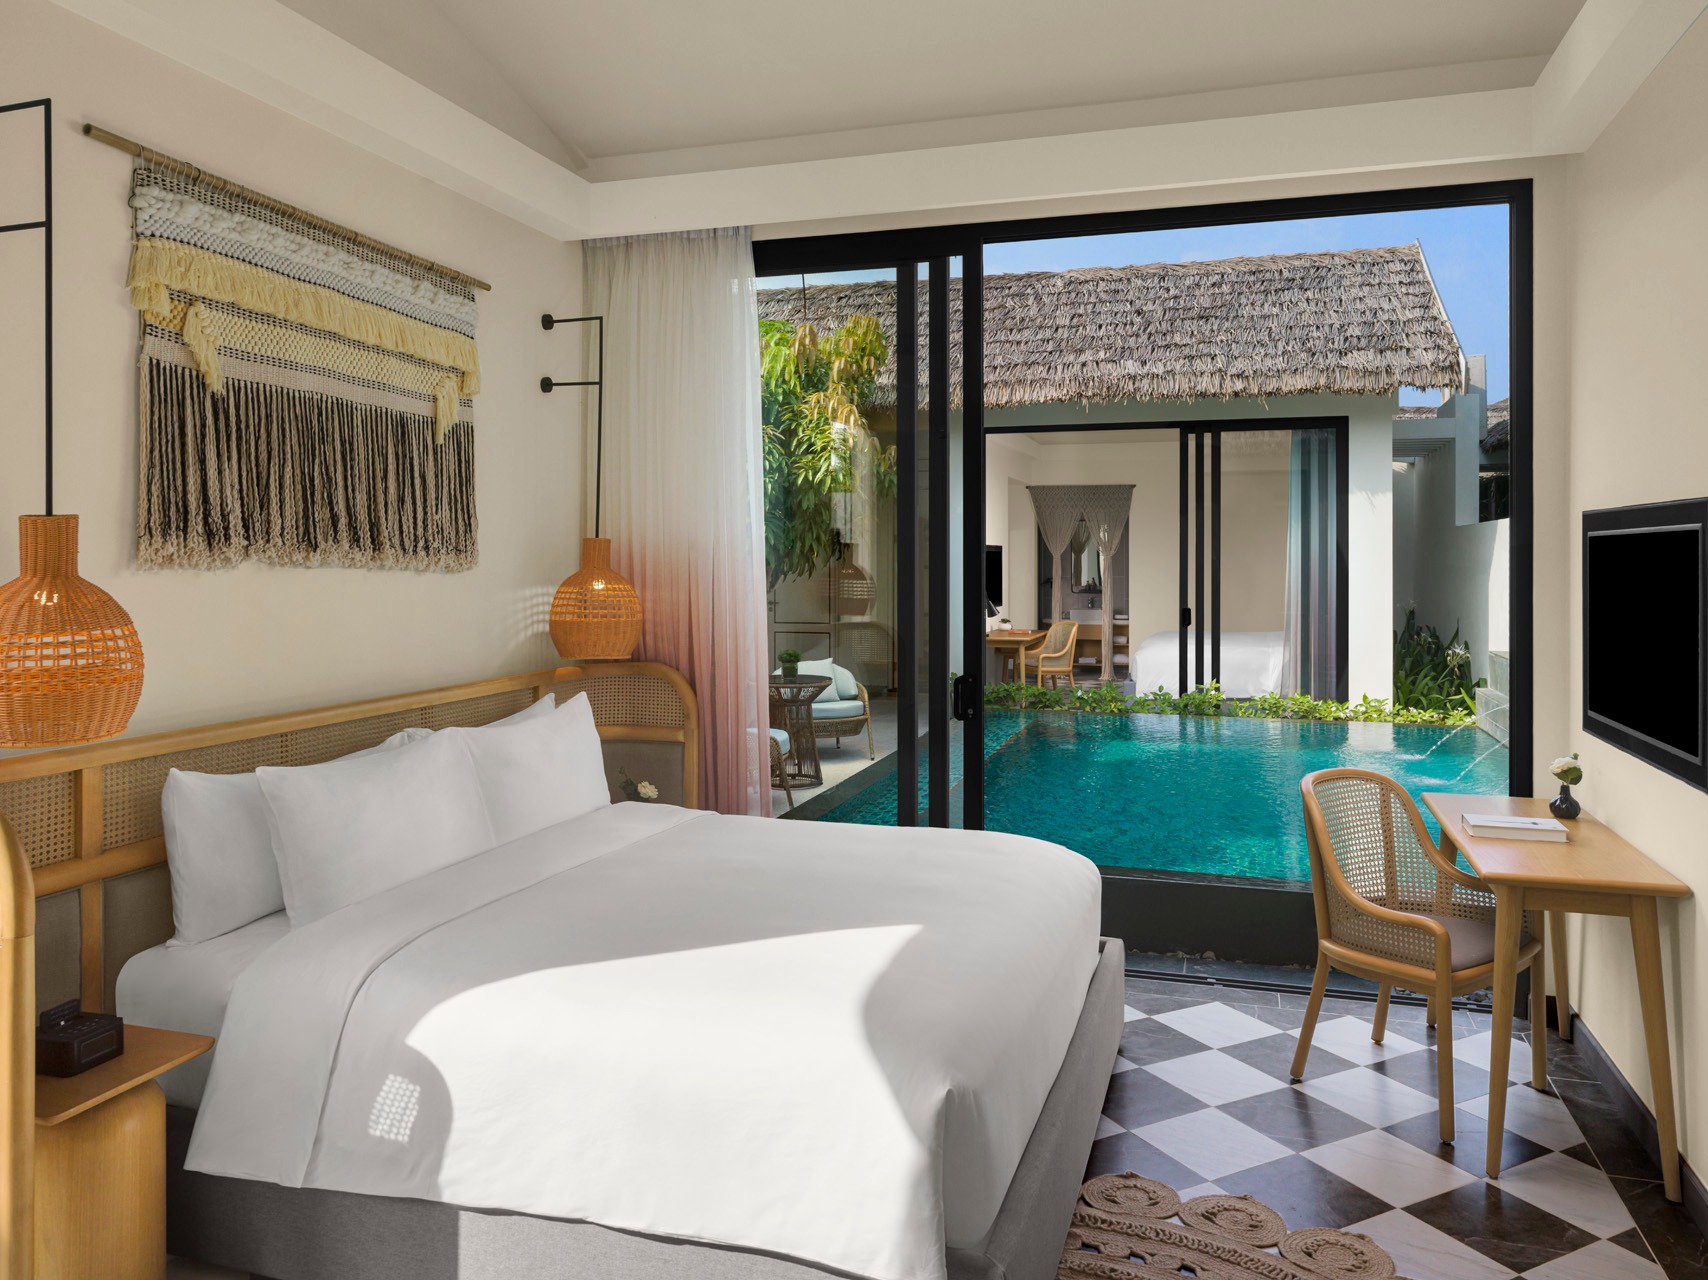 Du khách cũng có thể lựa chọn tận hưởng những giây phút thư giãn tuyệt đối tại New World Phu Quoc Resort nơi sang trọng, truyền thống và thiên nhiên hòa quyện hài hòa dưới bóng dừa tựa một thiên đường nghỉ dưỡng nhiệt đới. Hay trải nghiệm không gian độc đáo tại Premier Residences Phu Quoc Emerald Bay với thiết kế tái hiện hình ảnh 